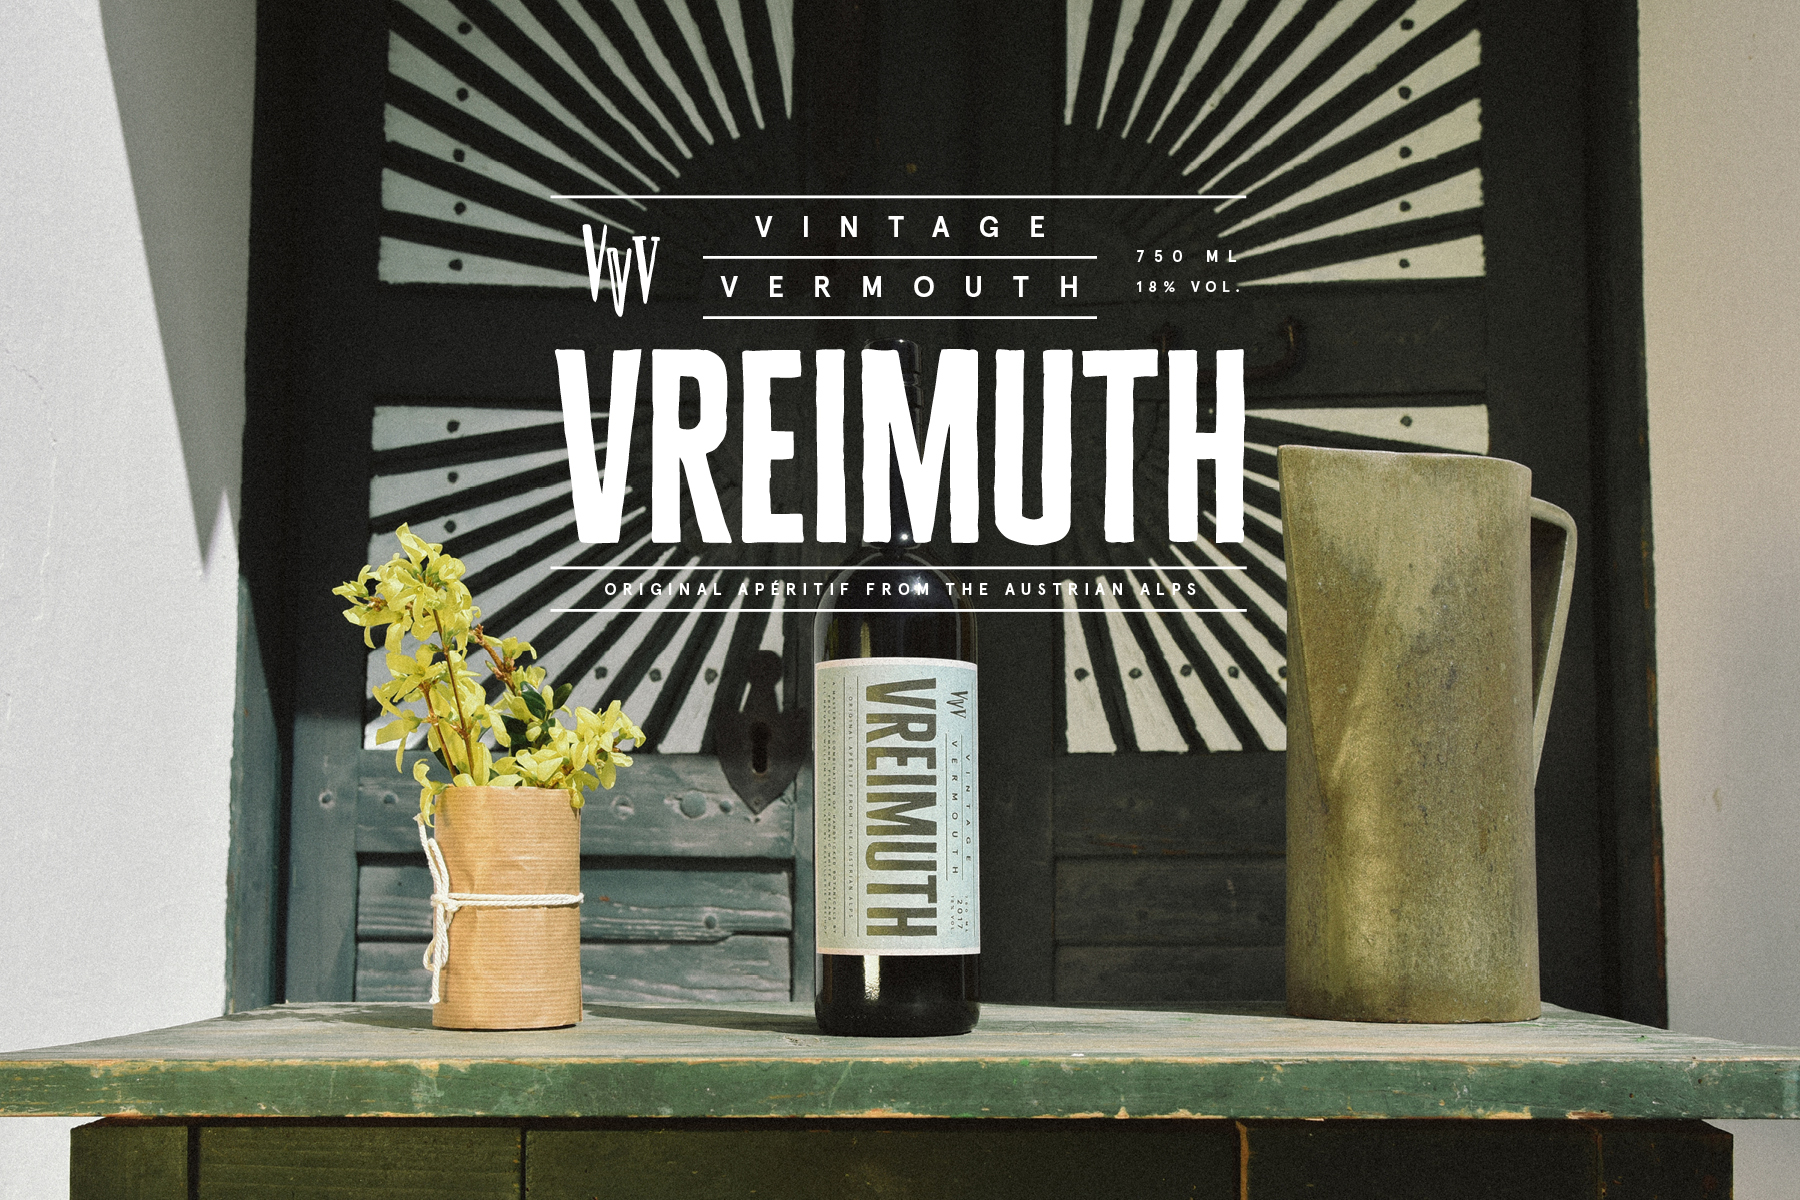 Vintage Vermouth Vreimuth